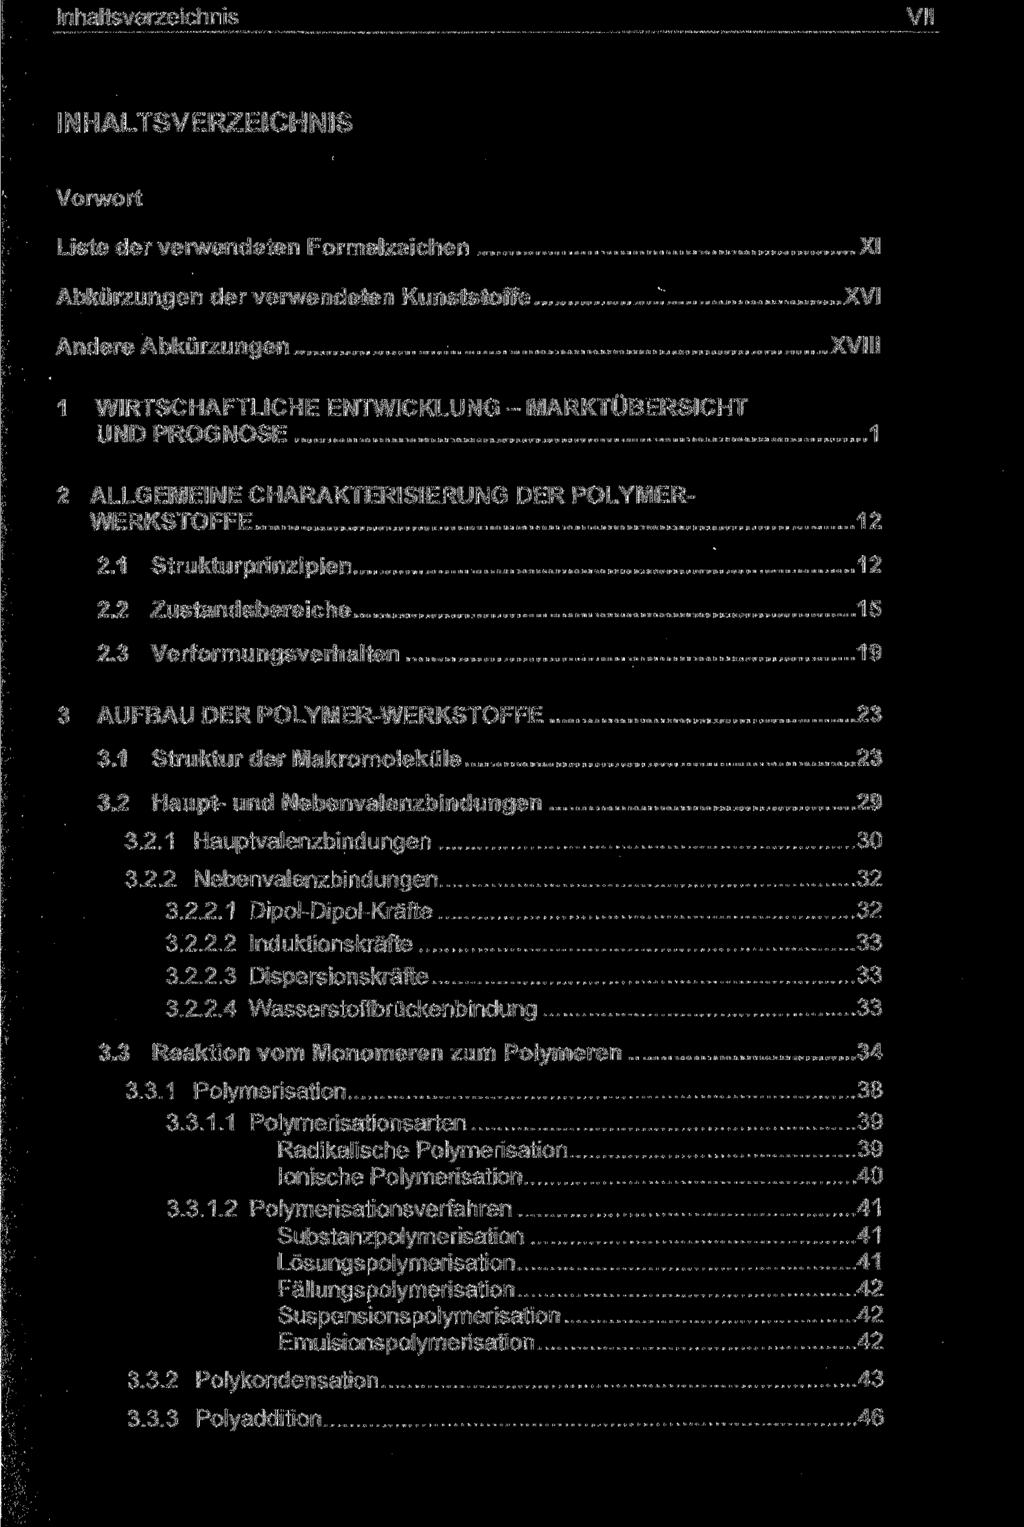 VII INHALTSVERZEICHNIS Vorwort Liste der verwendeten Formelzeichen Abkürzungen der verwendeten Kunststoffe Andere Abkürzungen XI XVI XVIII 1 WIRTSCHAFTLICHE ENTWICKLUNG - MARKTÜBERSICHT UND PROGNOSE